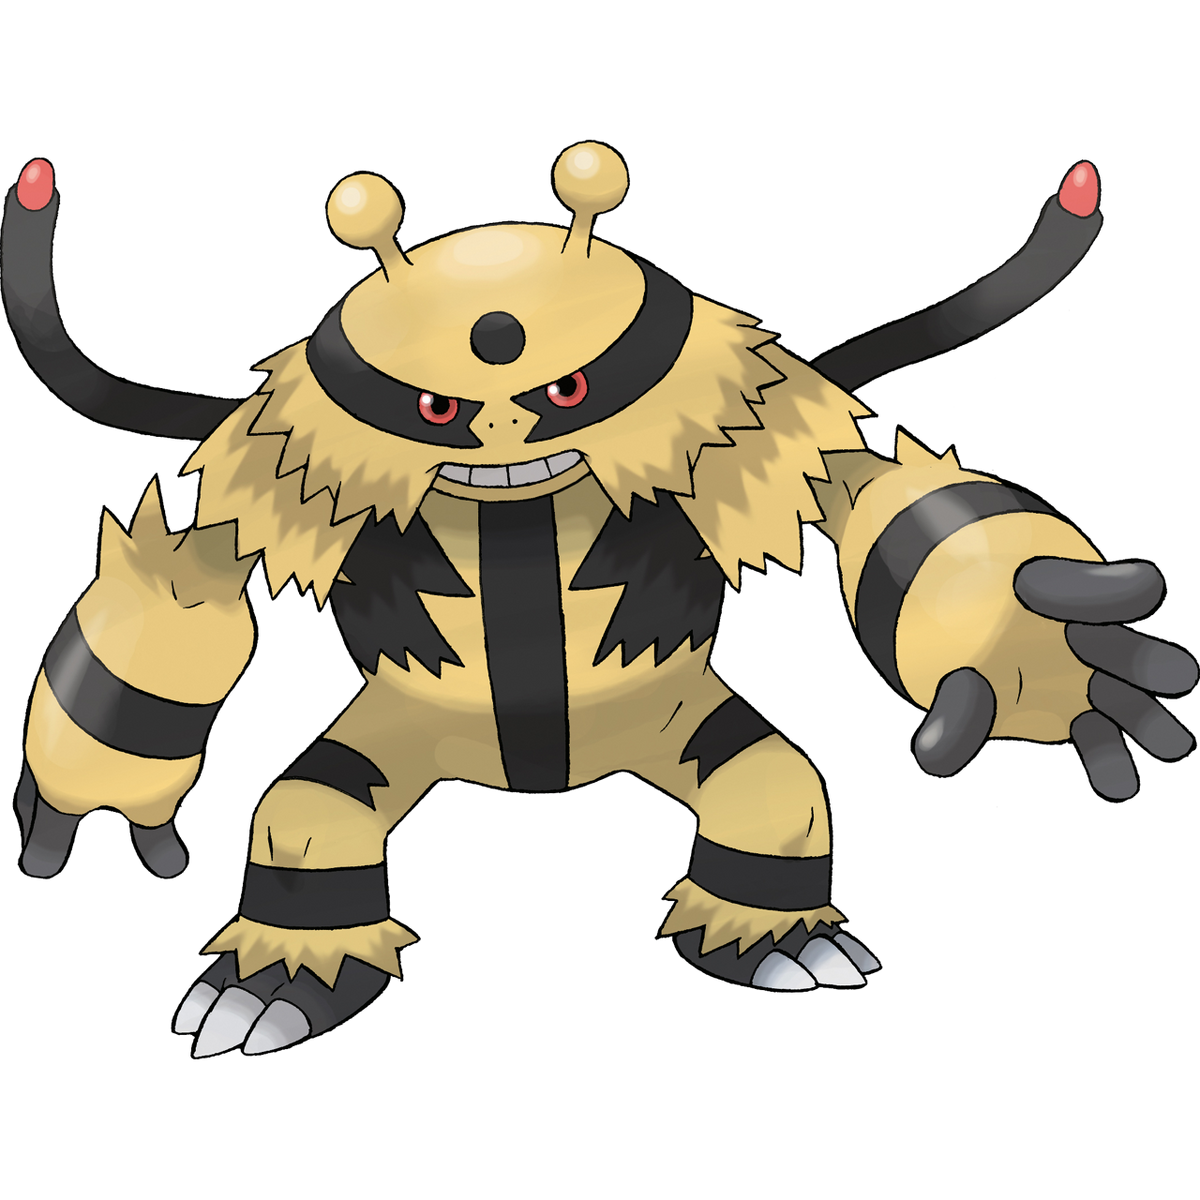 Jogada Excelente on X: Klawf é um novo Pokémon do tipo Pedra. Categoria:  Pokémon de emboscada Tipo: Pedra Altura: 1,3m Peso: 79,0 kg Habilidade:  Wrath Shell ou Carapace  / X